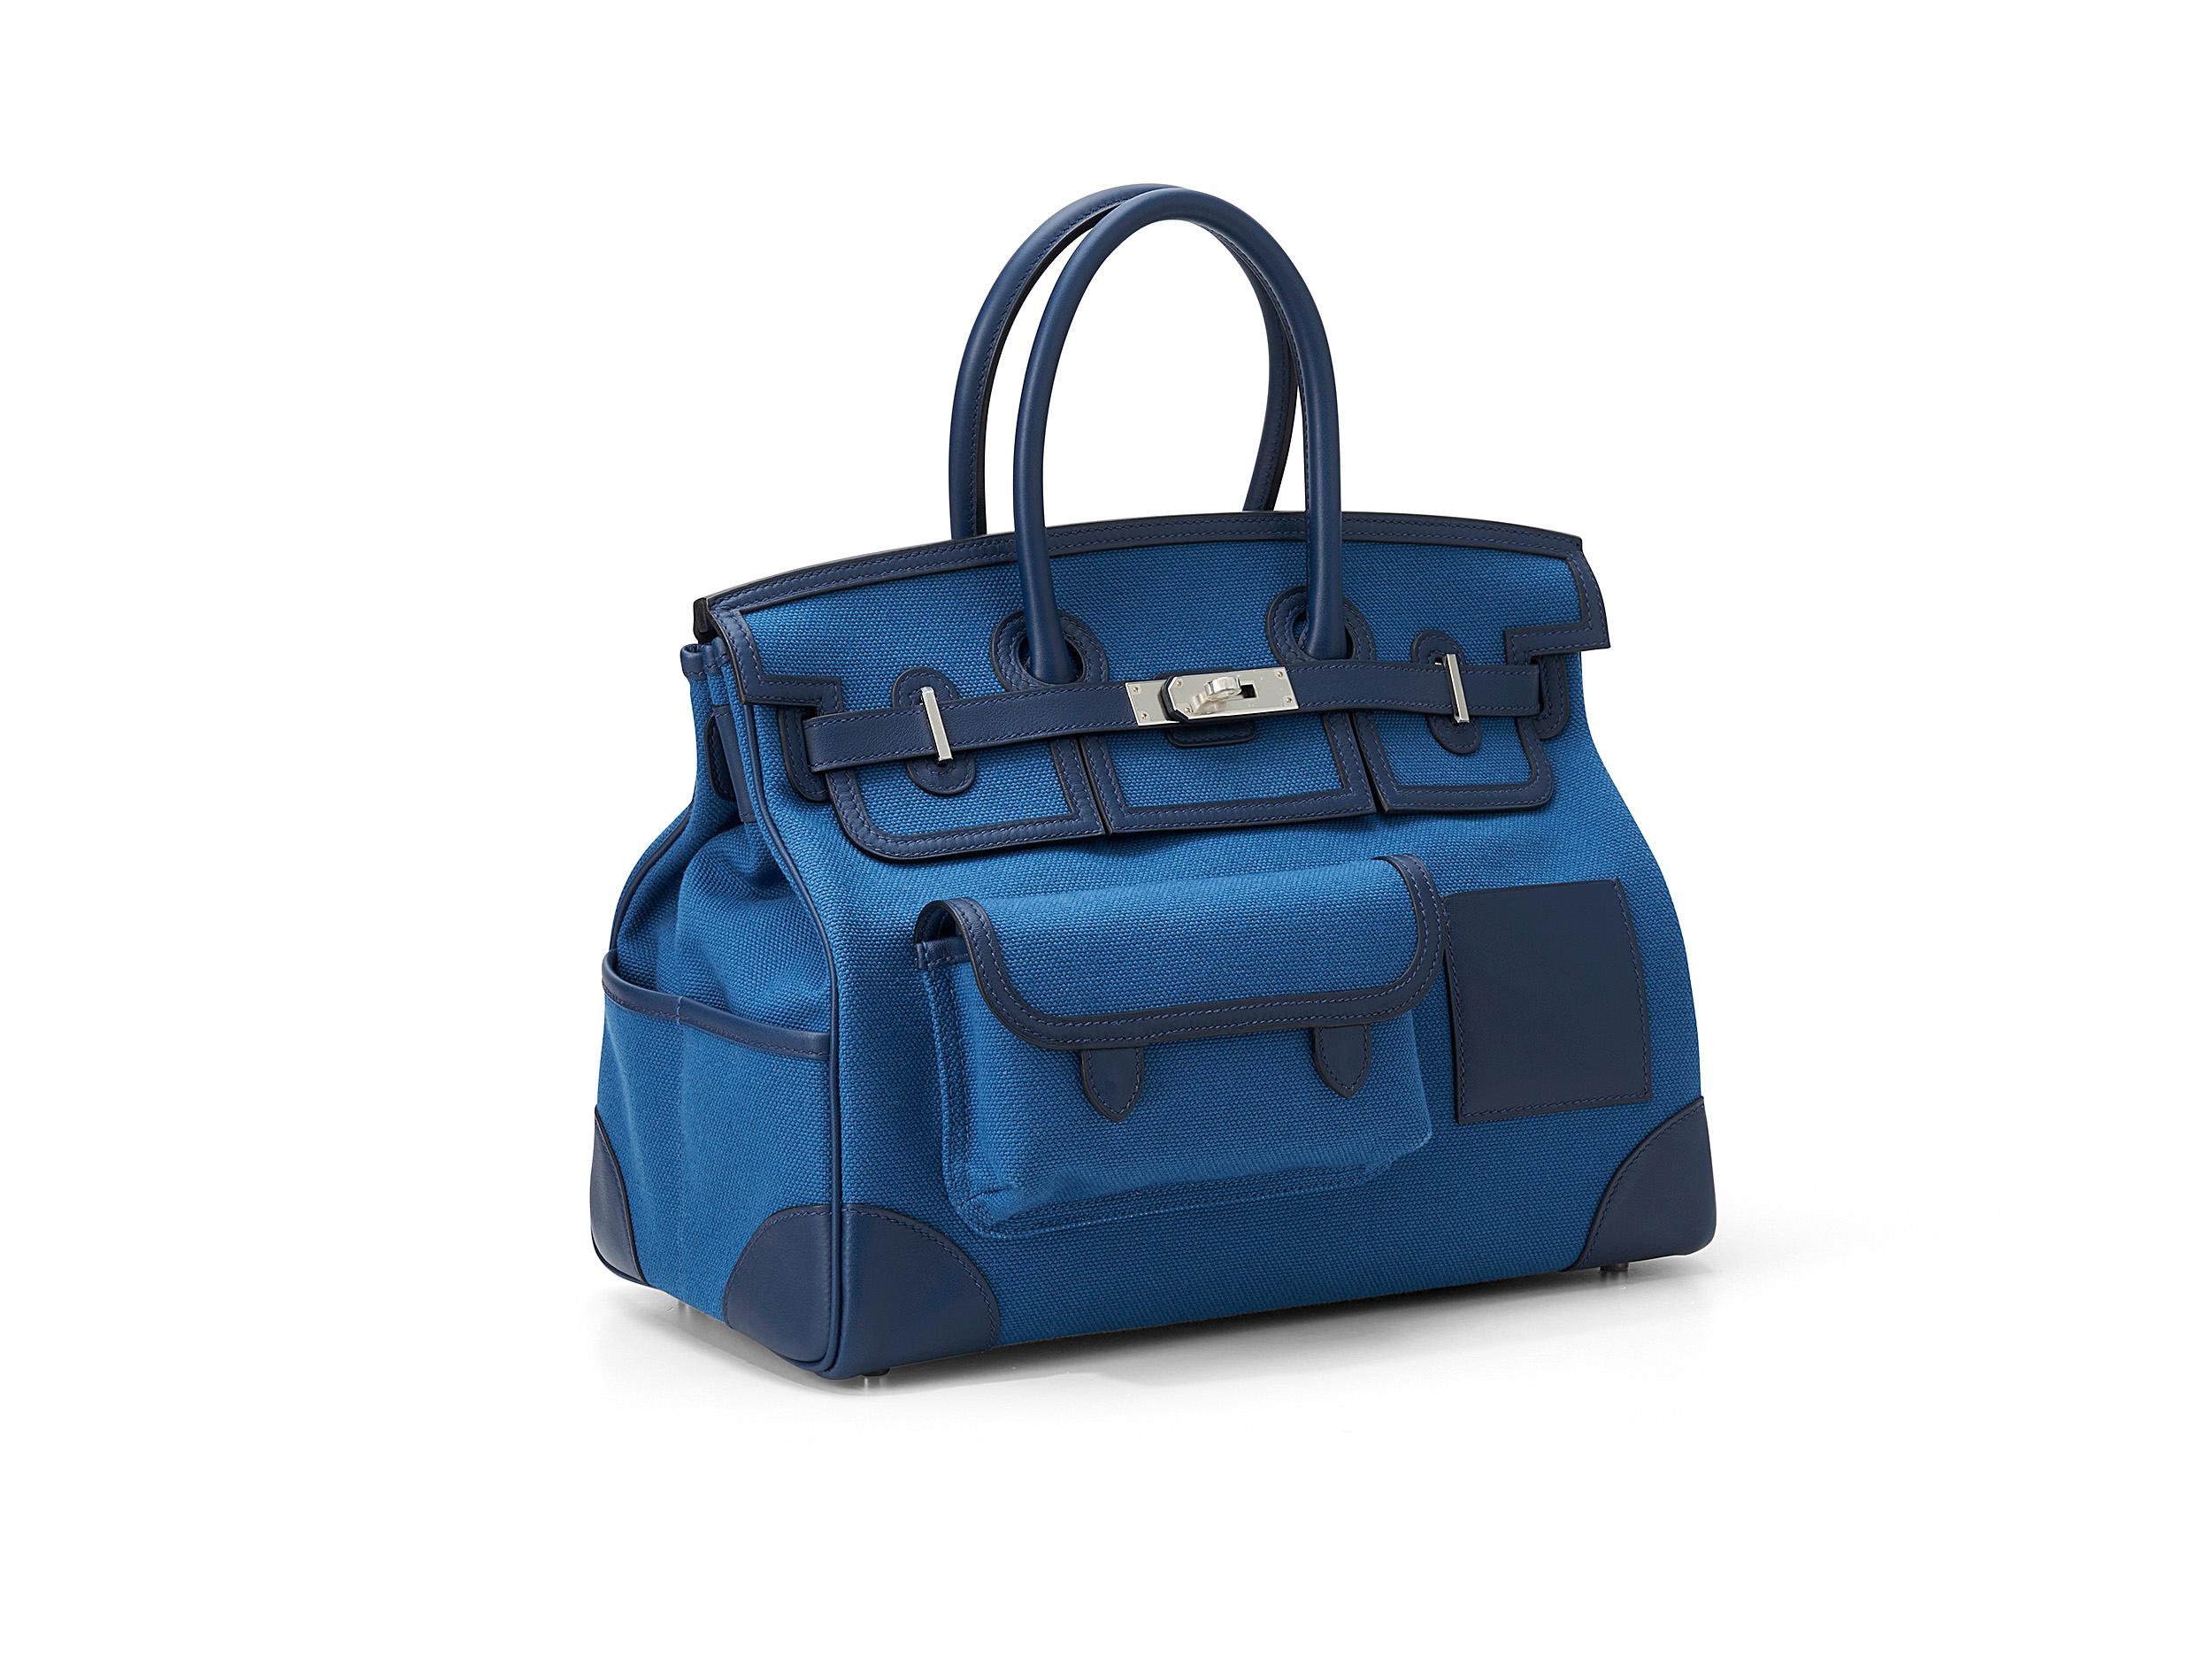 Hermès Birkin Cargo 35 in Bleu Marine und Canvas Swift Leder mit Palladiumbeschlägen. Die Tasche ist ungetragen und wird als komplettes Set geliefert. 

Stempel Y (2020) 

